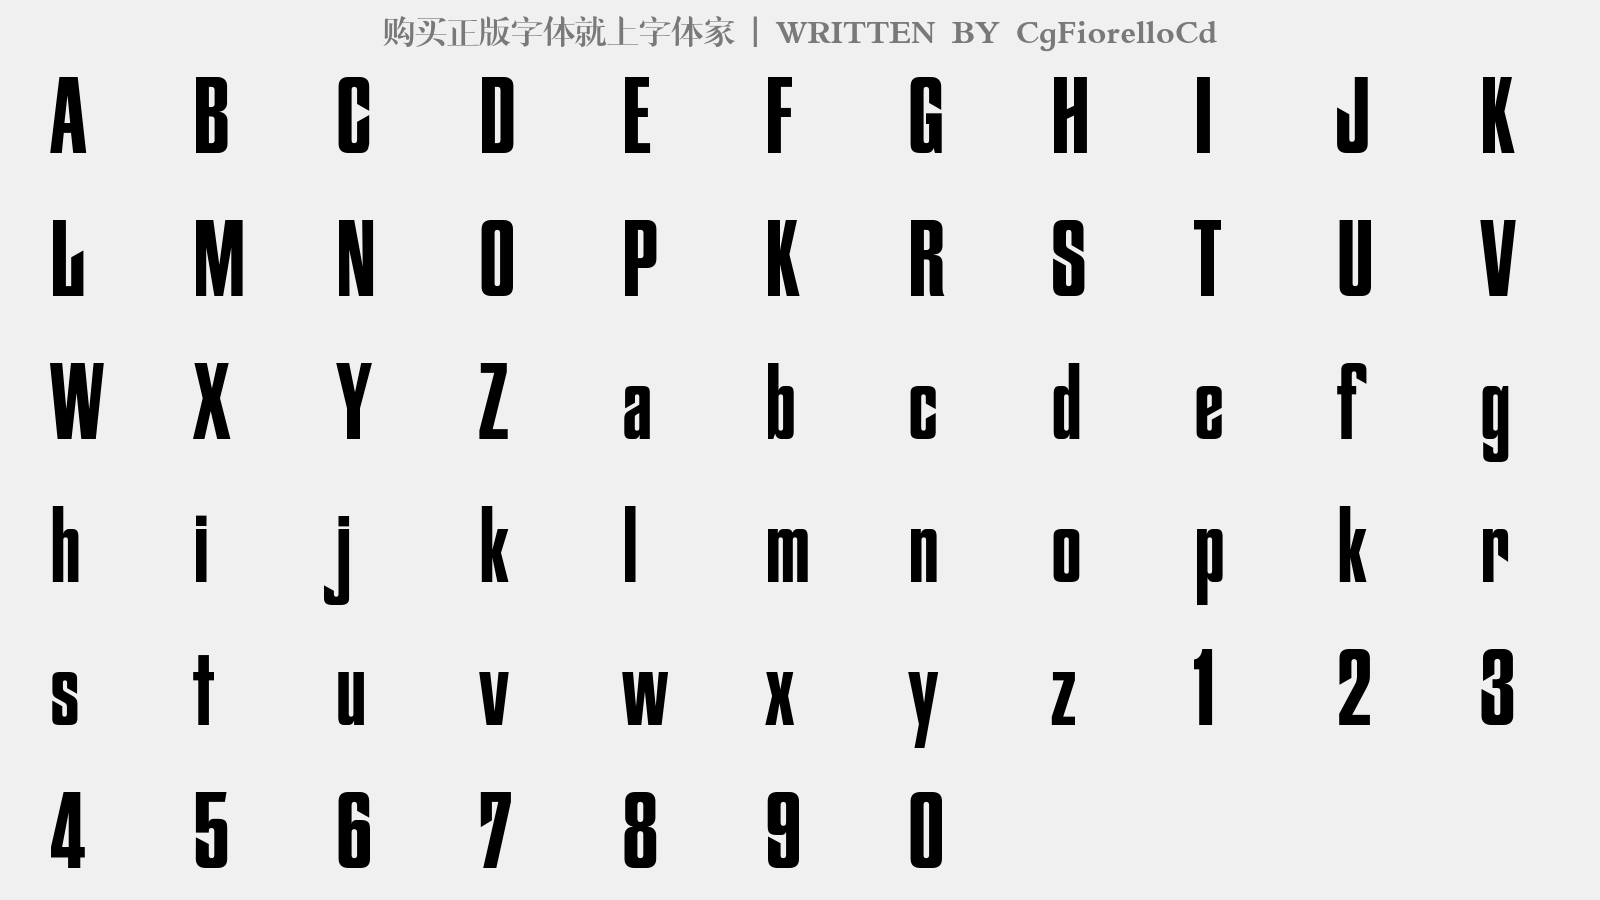 CgFiorelloCd - 大写字母/小写字母/数字